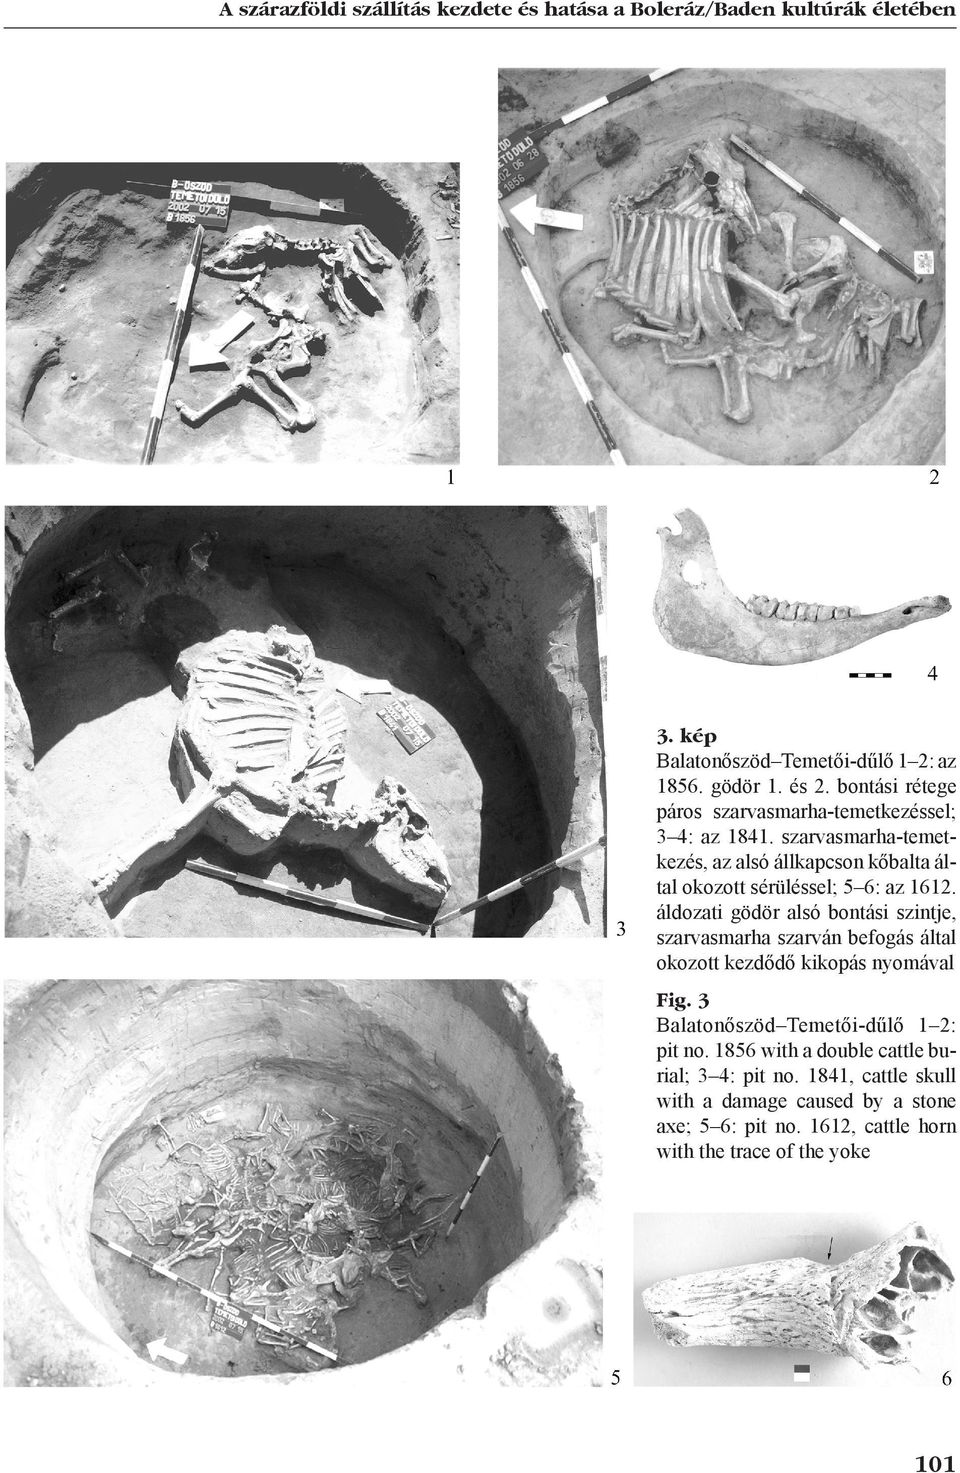 szarvasmarha-temetkezés, az alsó állkapcson kőbalta által okozott sérüléssel; 5 6: az 1612.